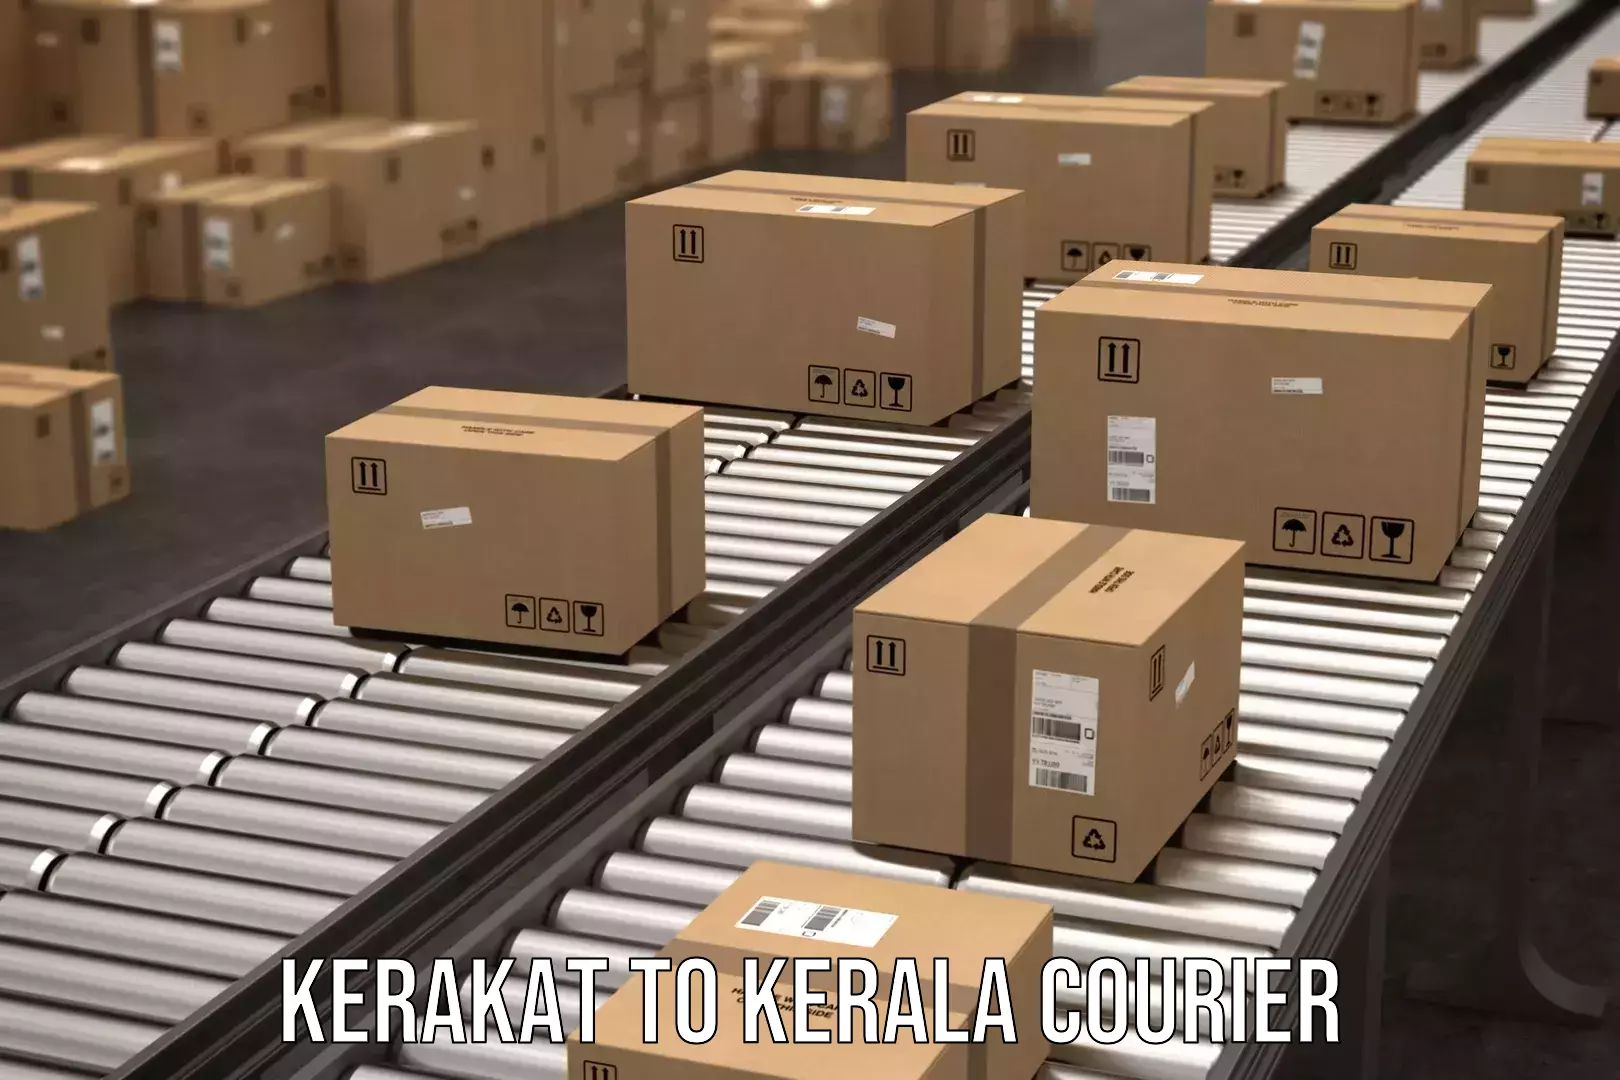 Cost-effective freight solutions Kerakat to Nedumkandam